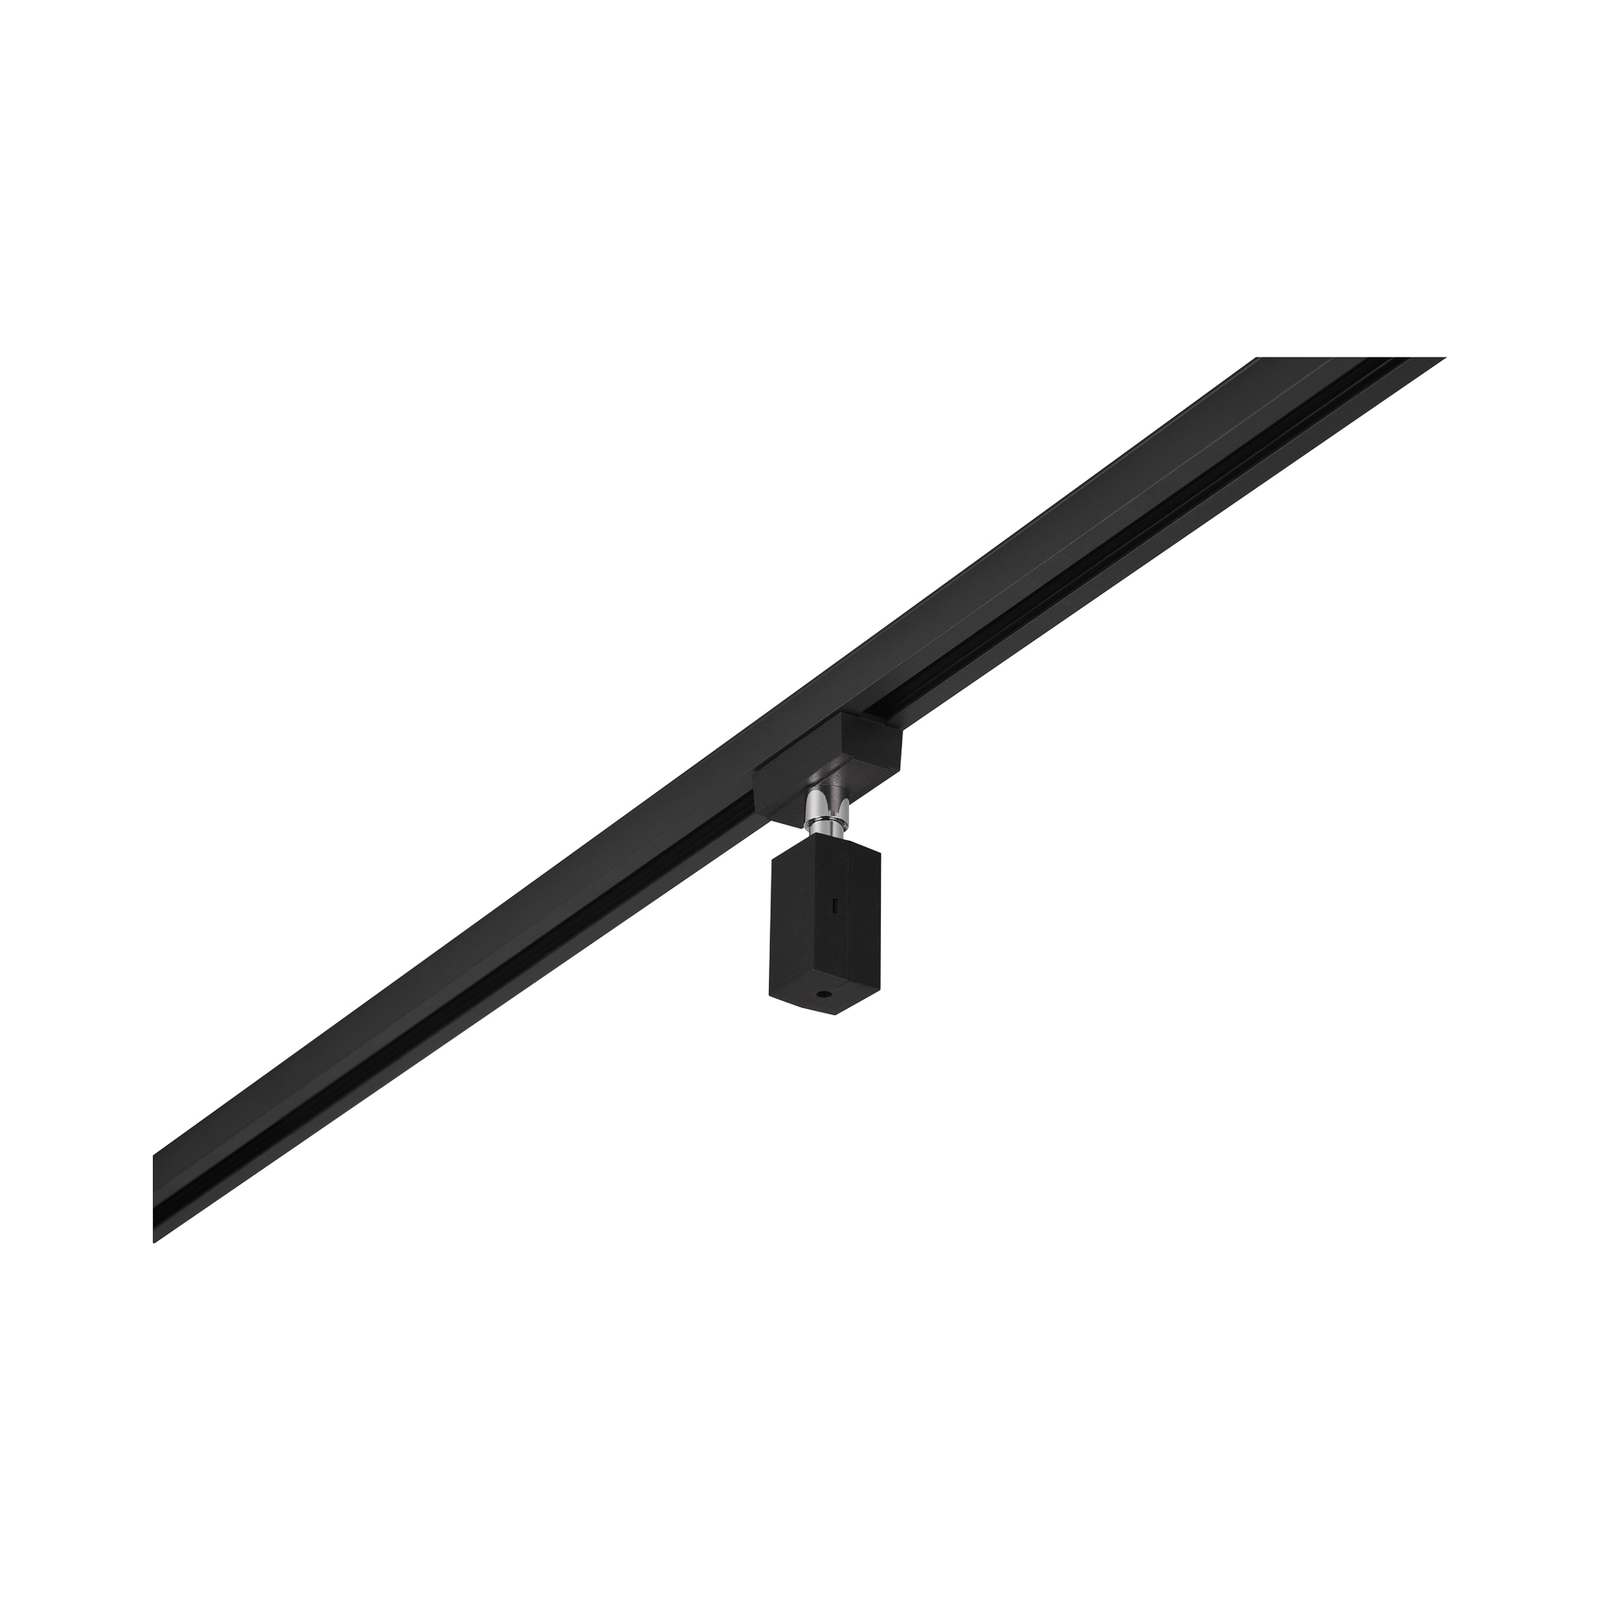 Pendant adapter for DUOline rail, matt black